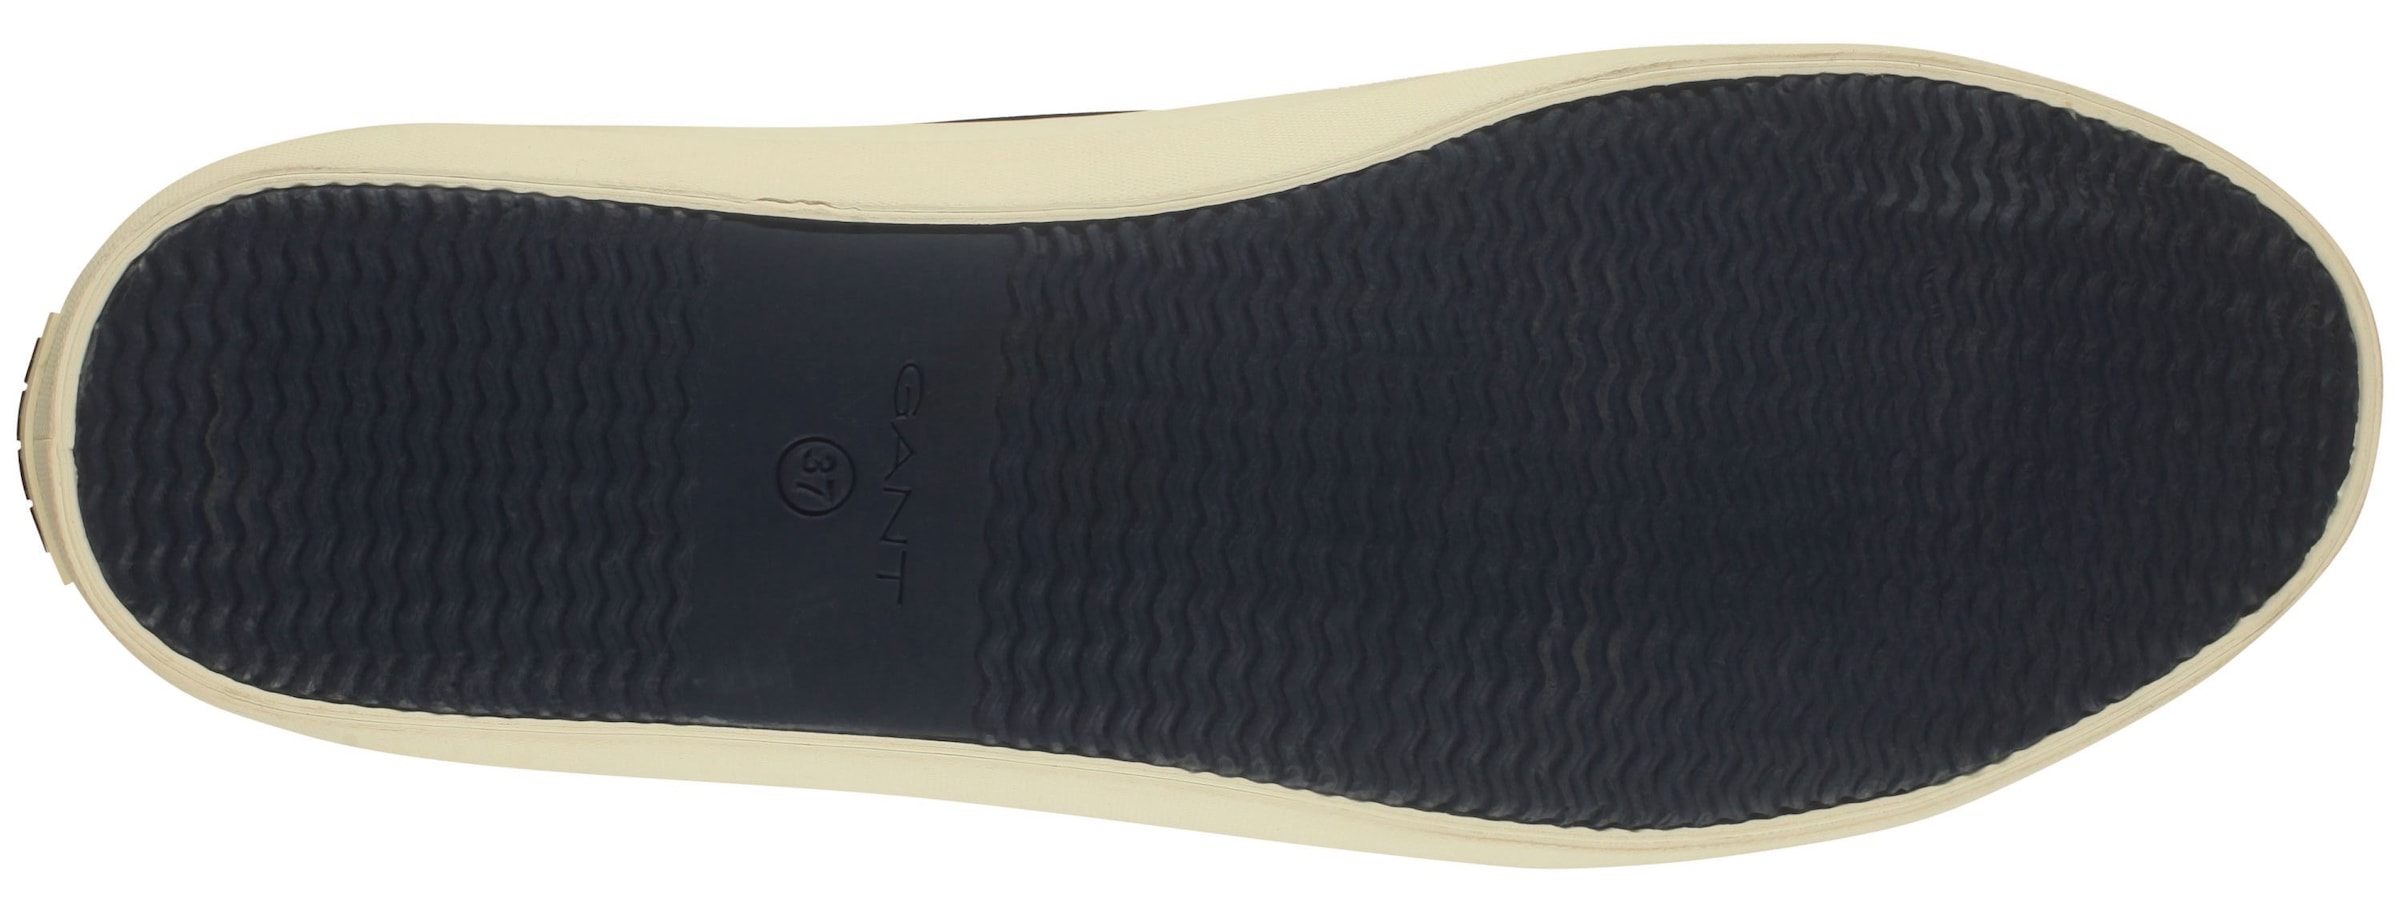 Gant Sneaker »Pillox«, mit leichtem Textilfutter, Freizeitschuh, Halbschuh, Schnürschuh